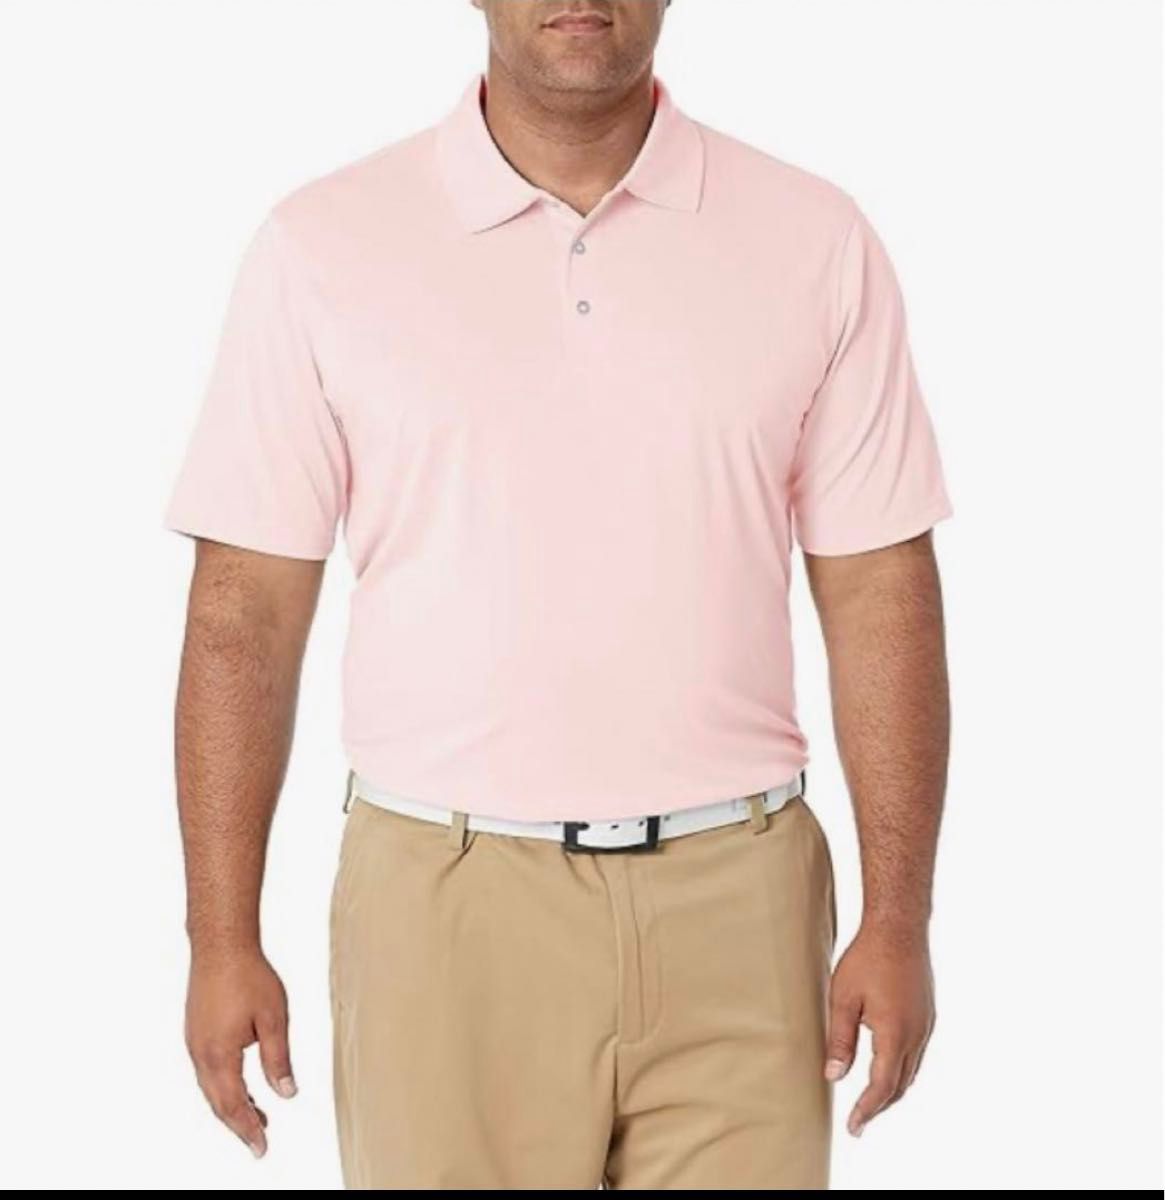 ゴルフポロシャツ 速乾性 レギュラーフィット メンズ